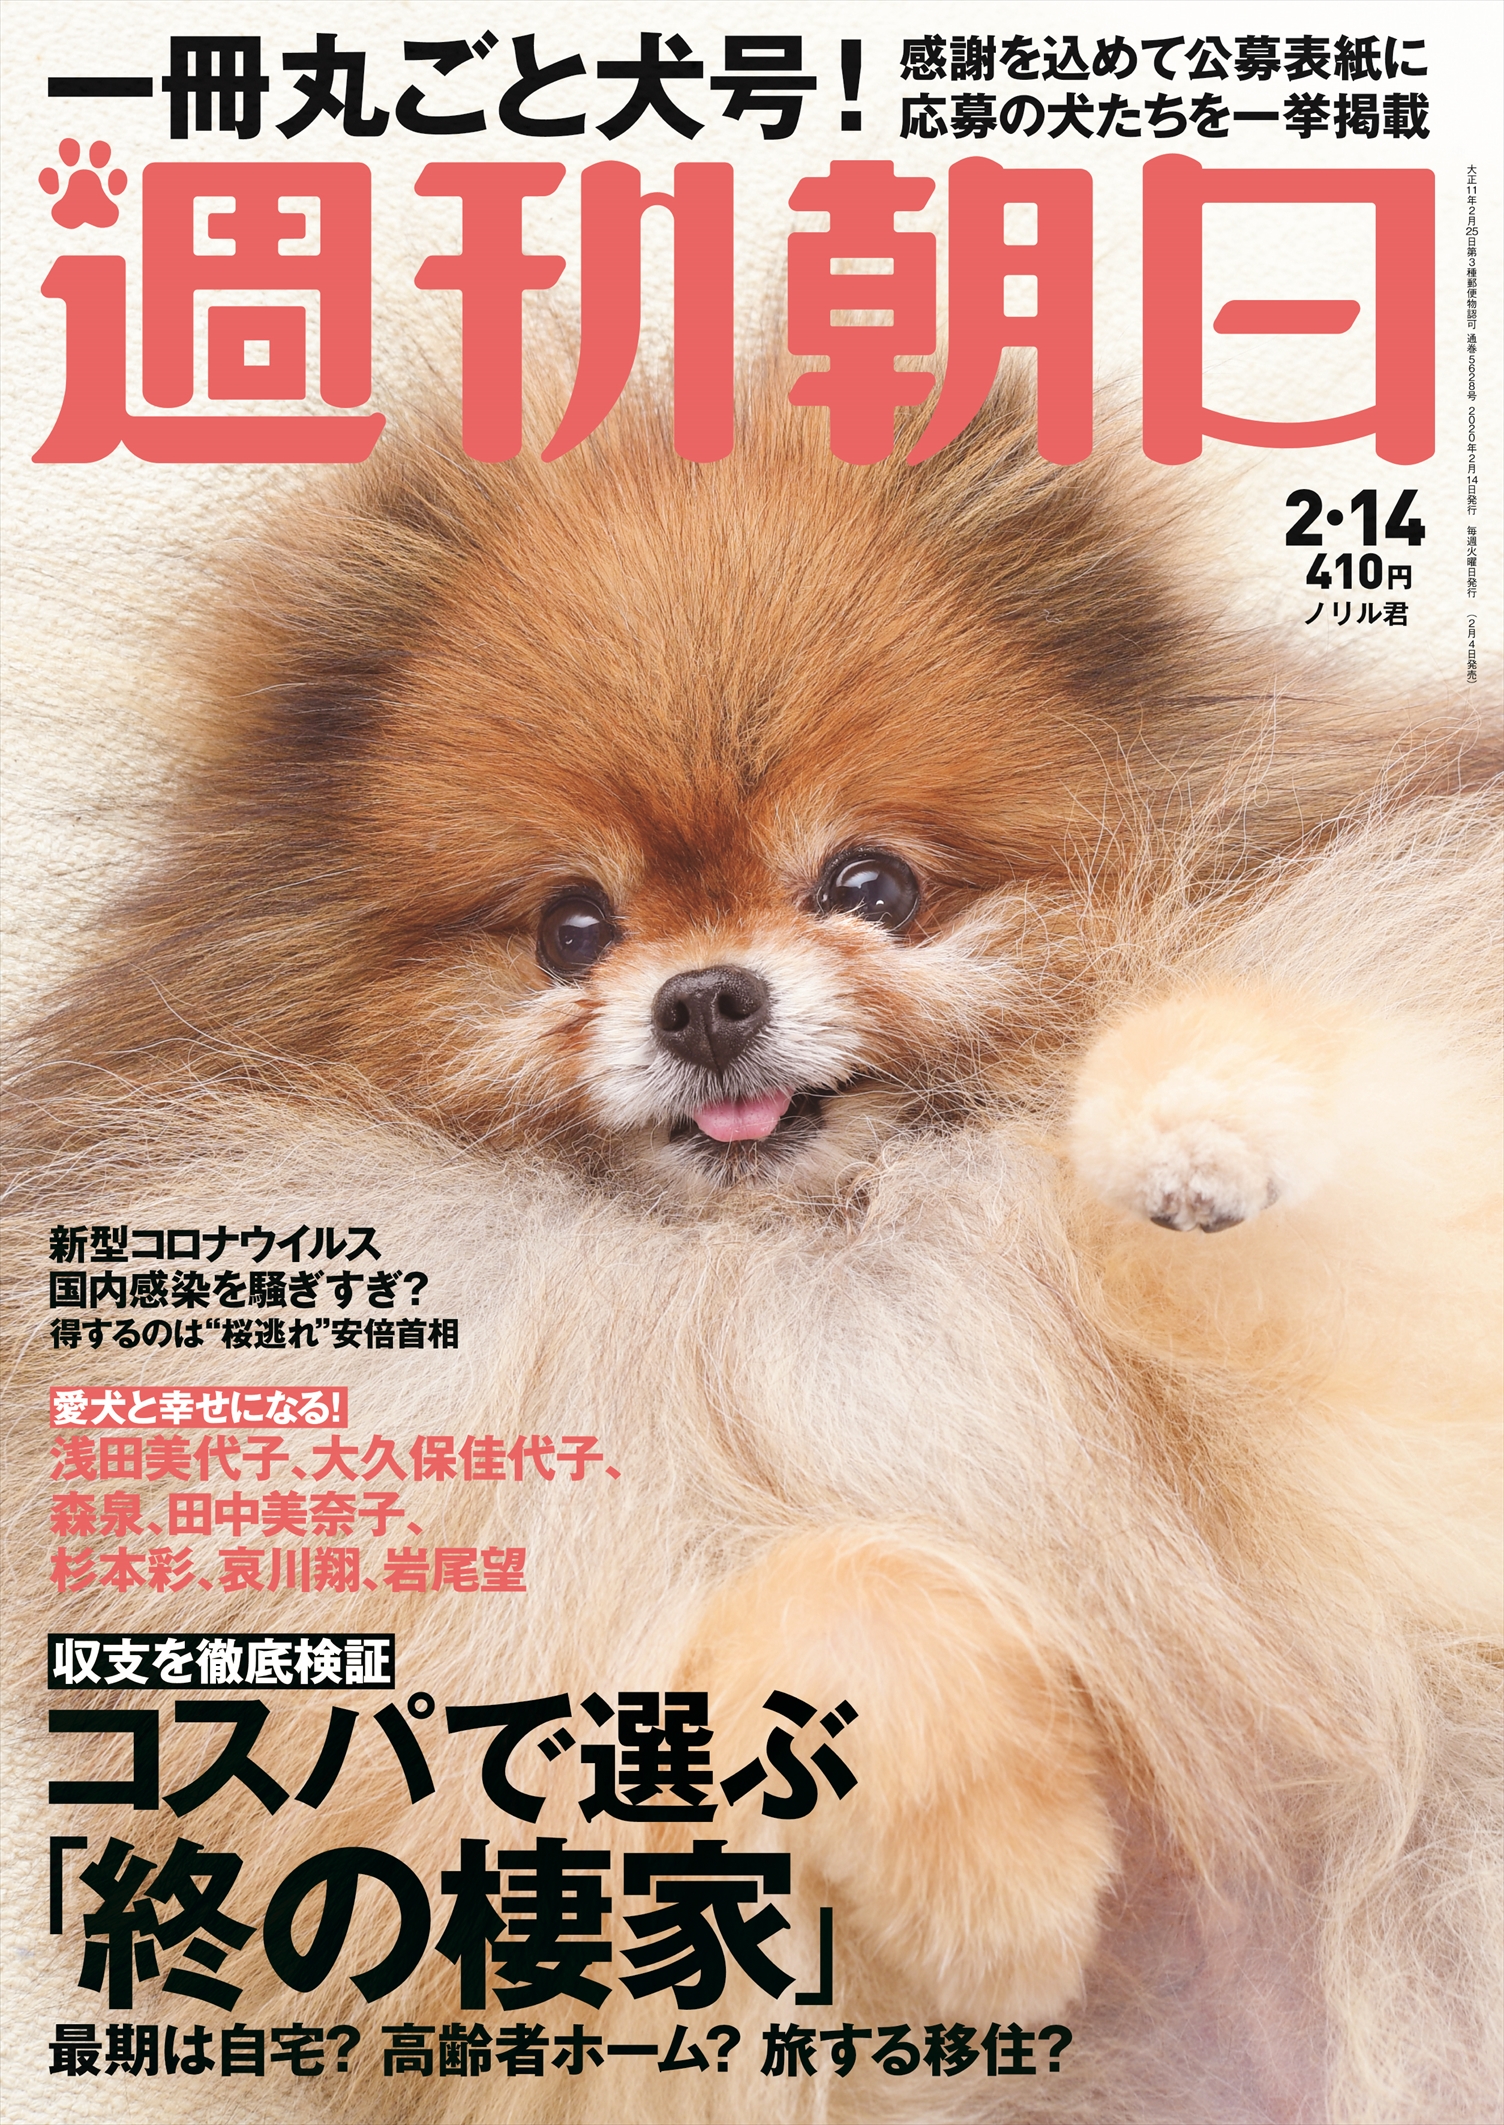 猫ブームには負けないワン 週刊朝日史上初の わんこ 特集 株式会社朝日新聞出版のプレスリリース